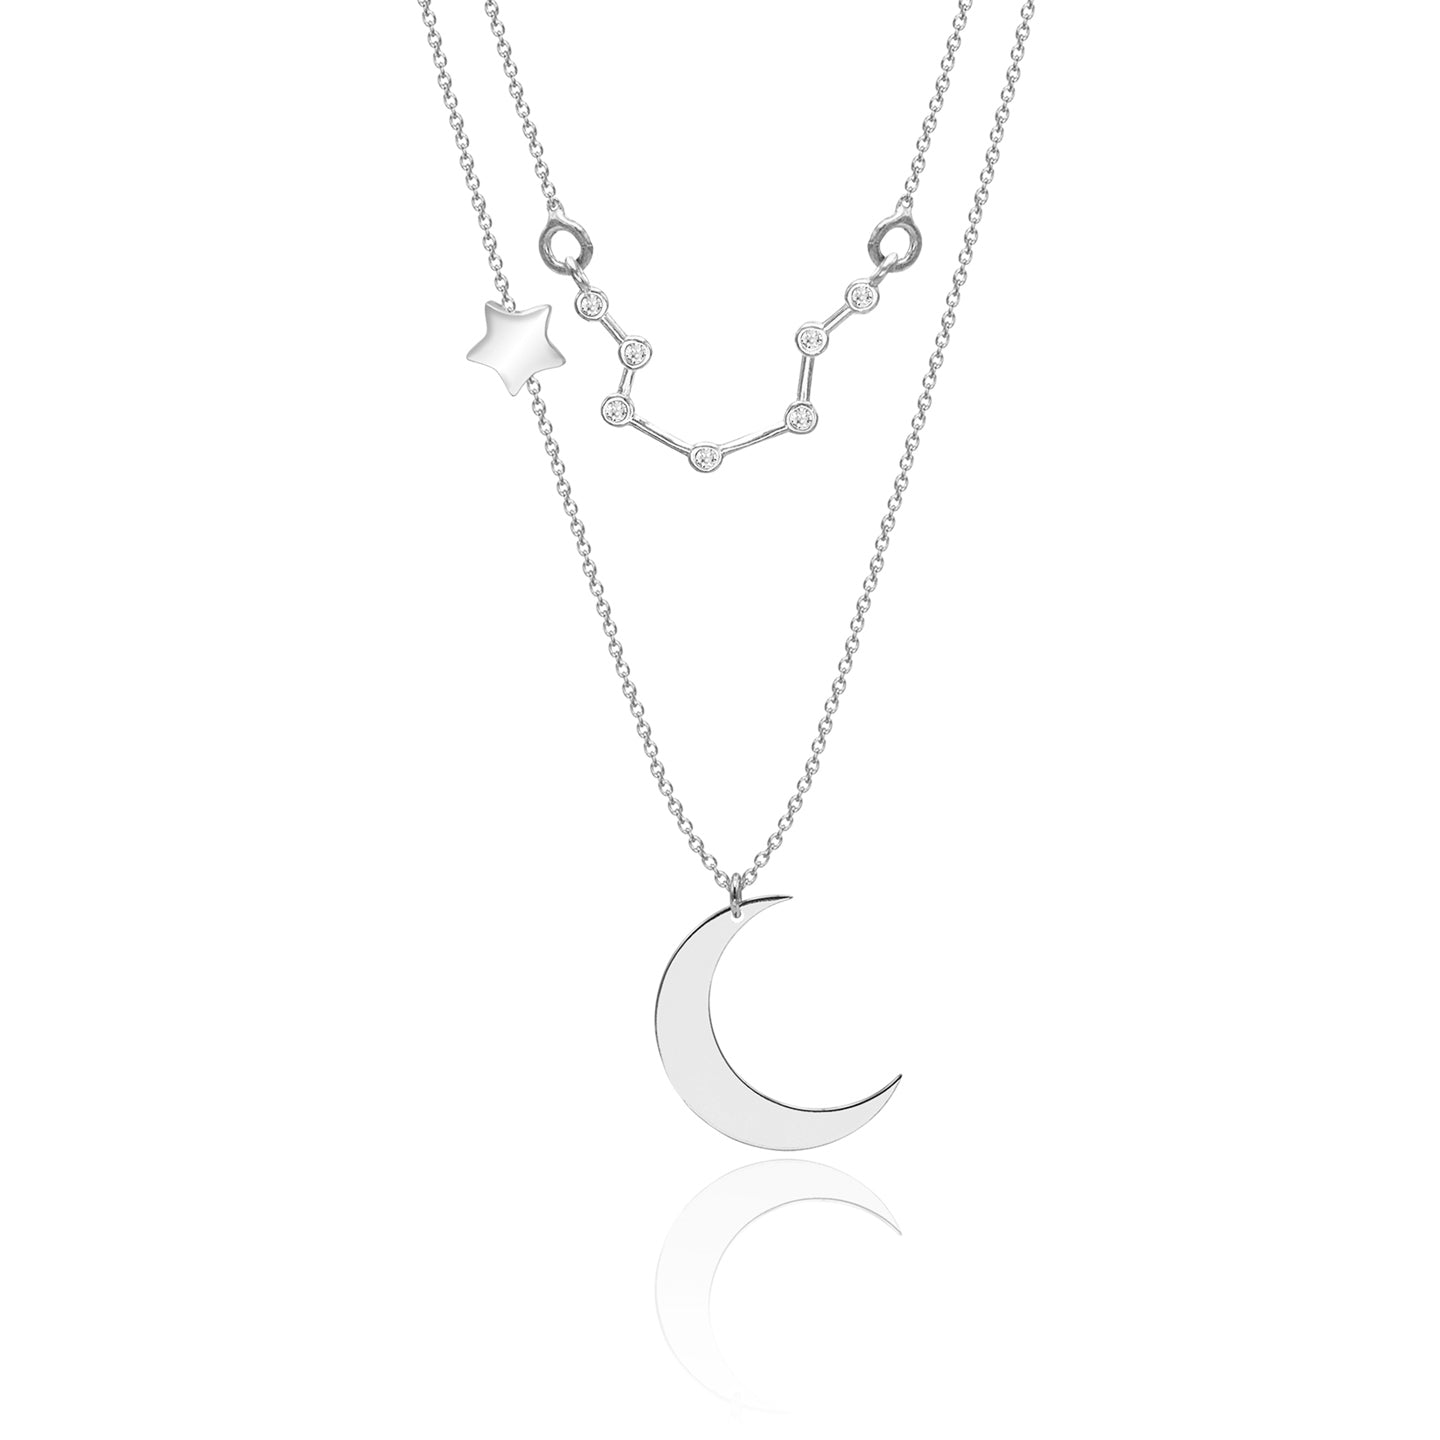 Lantisor dublu argint cu luna si constelatie Varsator